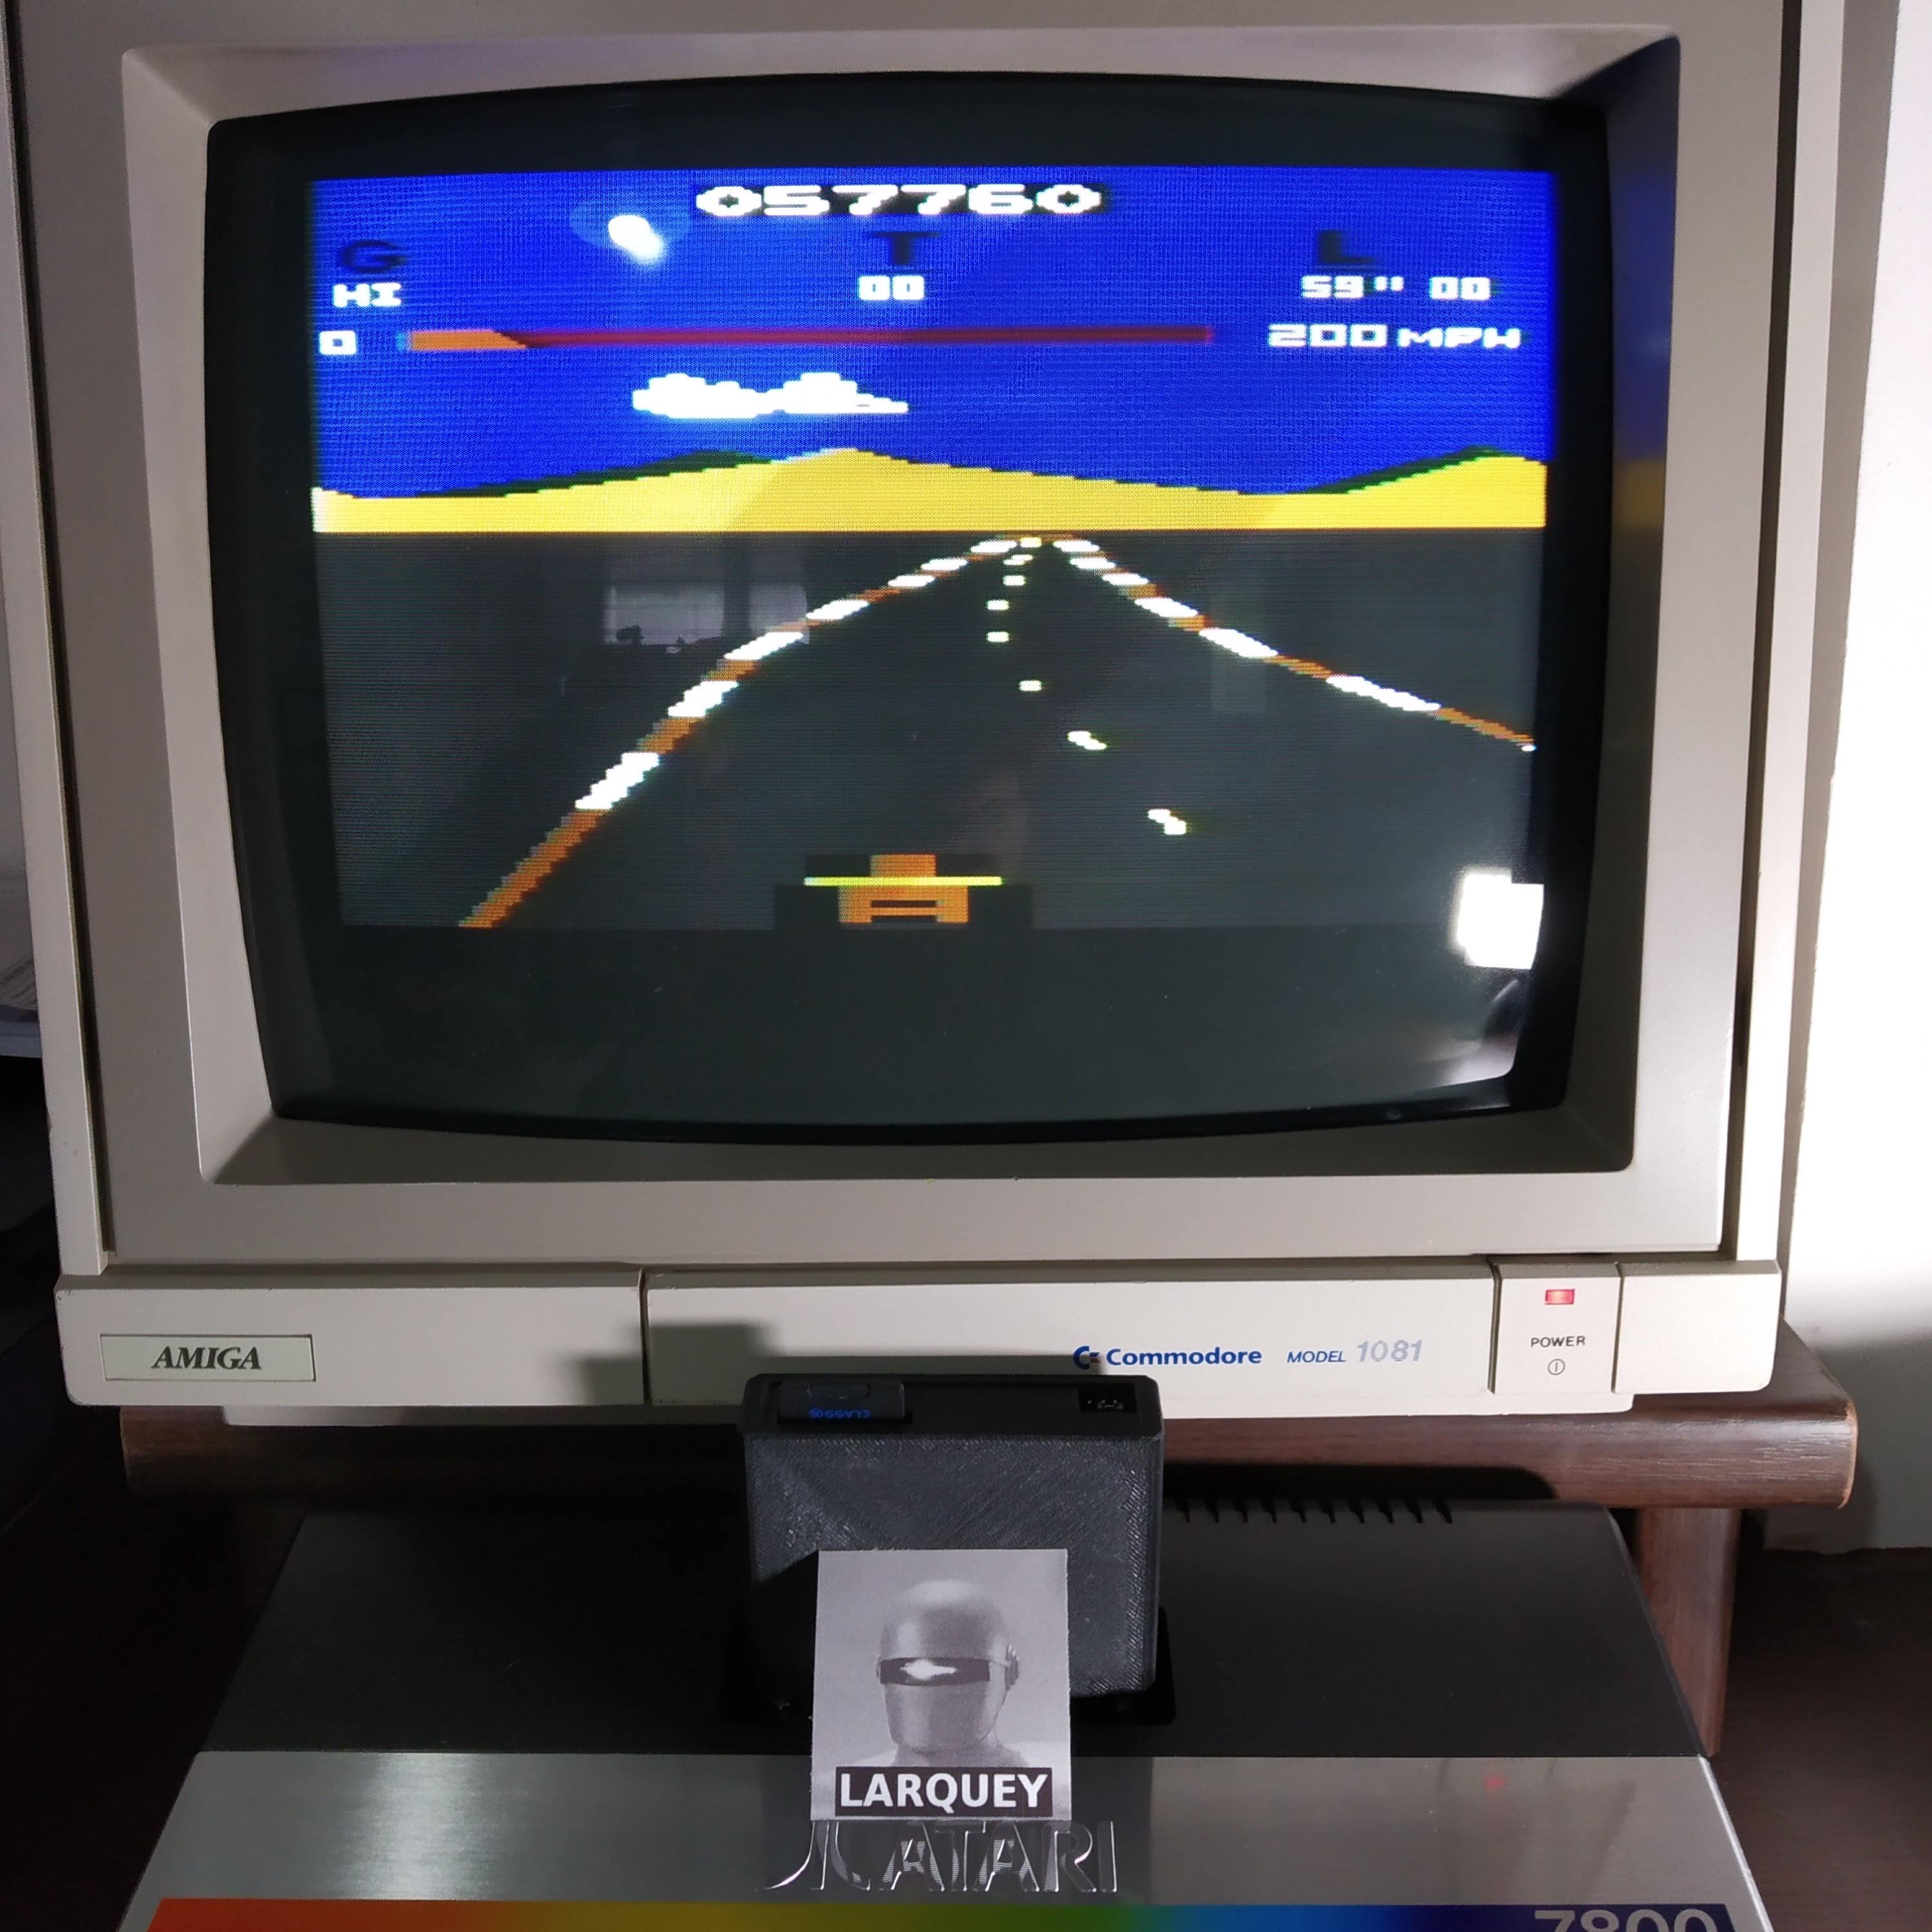 Larquey: Pole Position (Atari 2600) 57,760 points on 2020-06-20 12:17:06